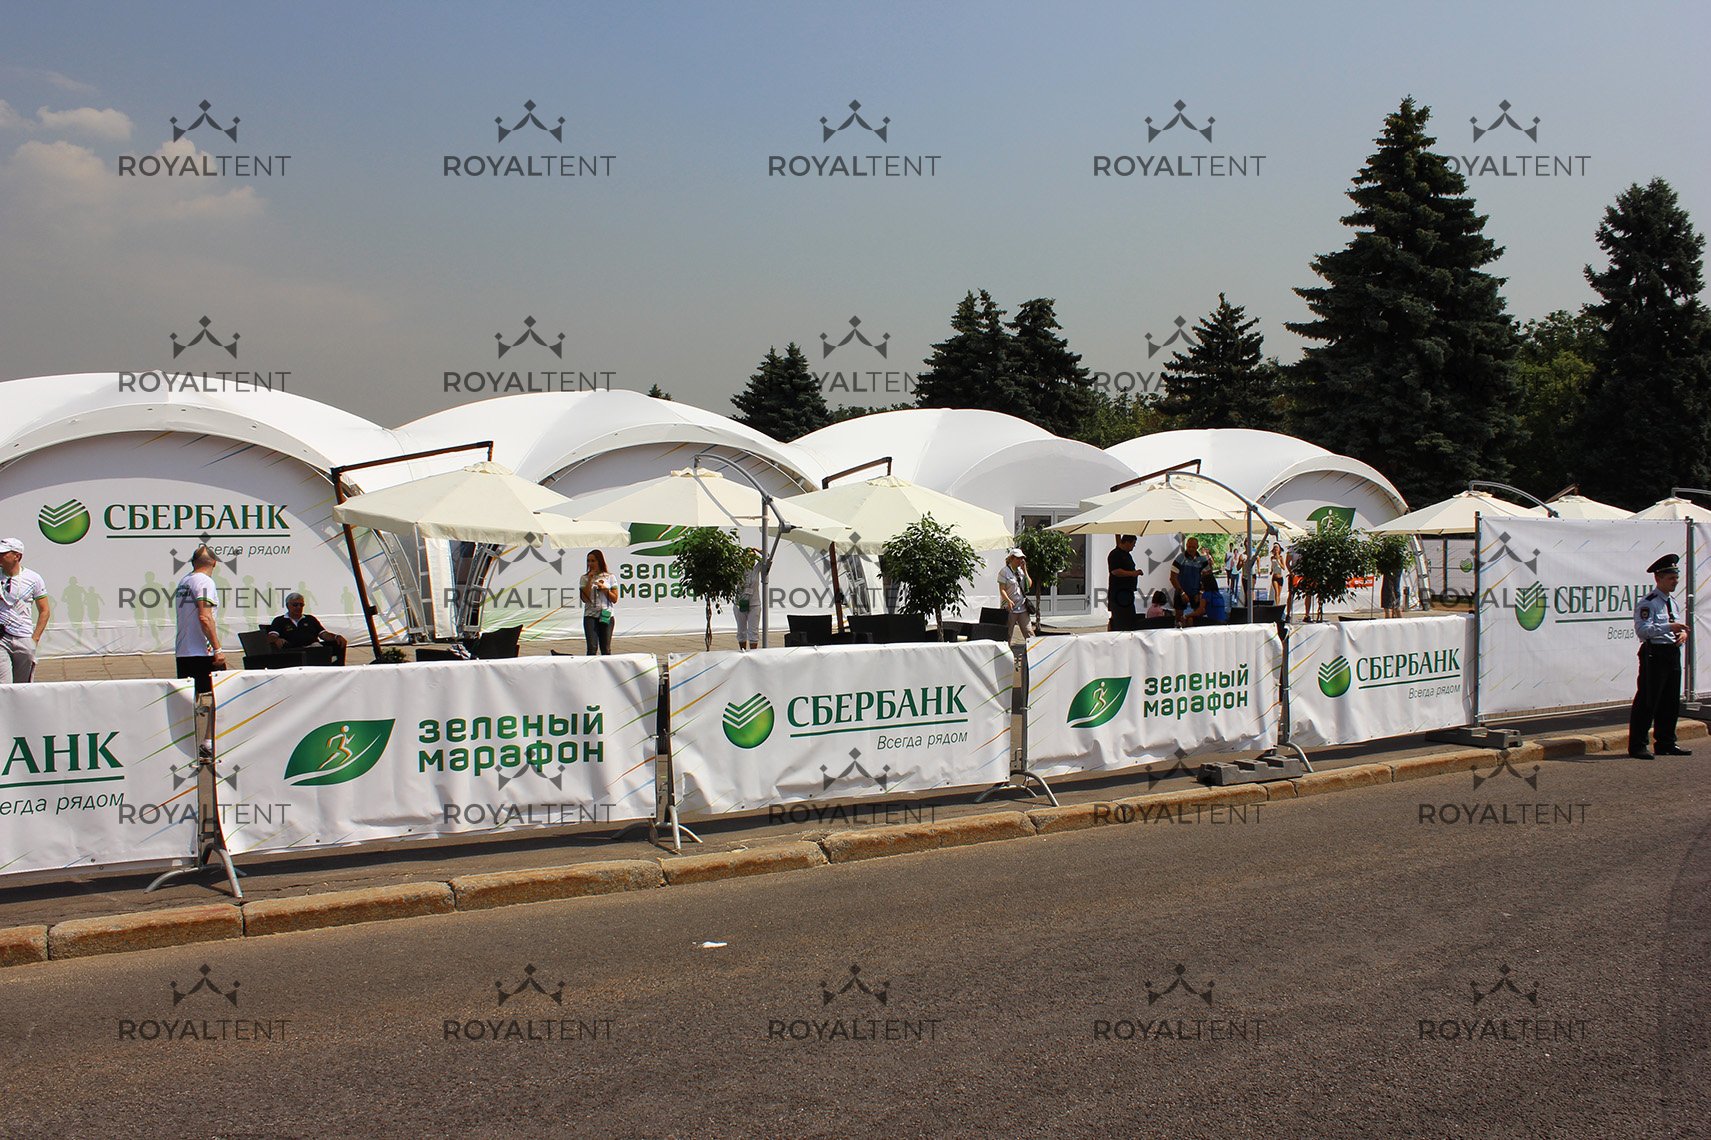 Аренда шатров для проведения национального забега «Зеленый марафон» Сбербанка